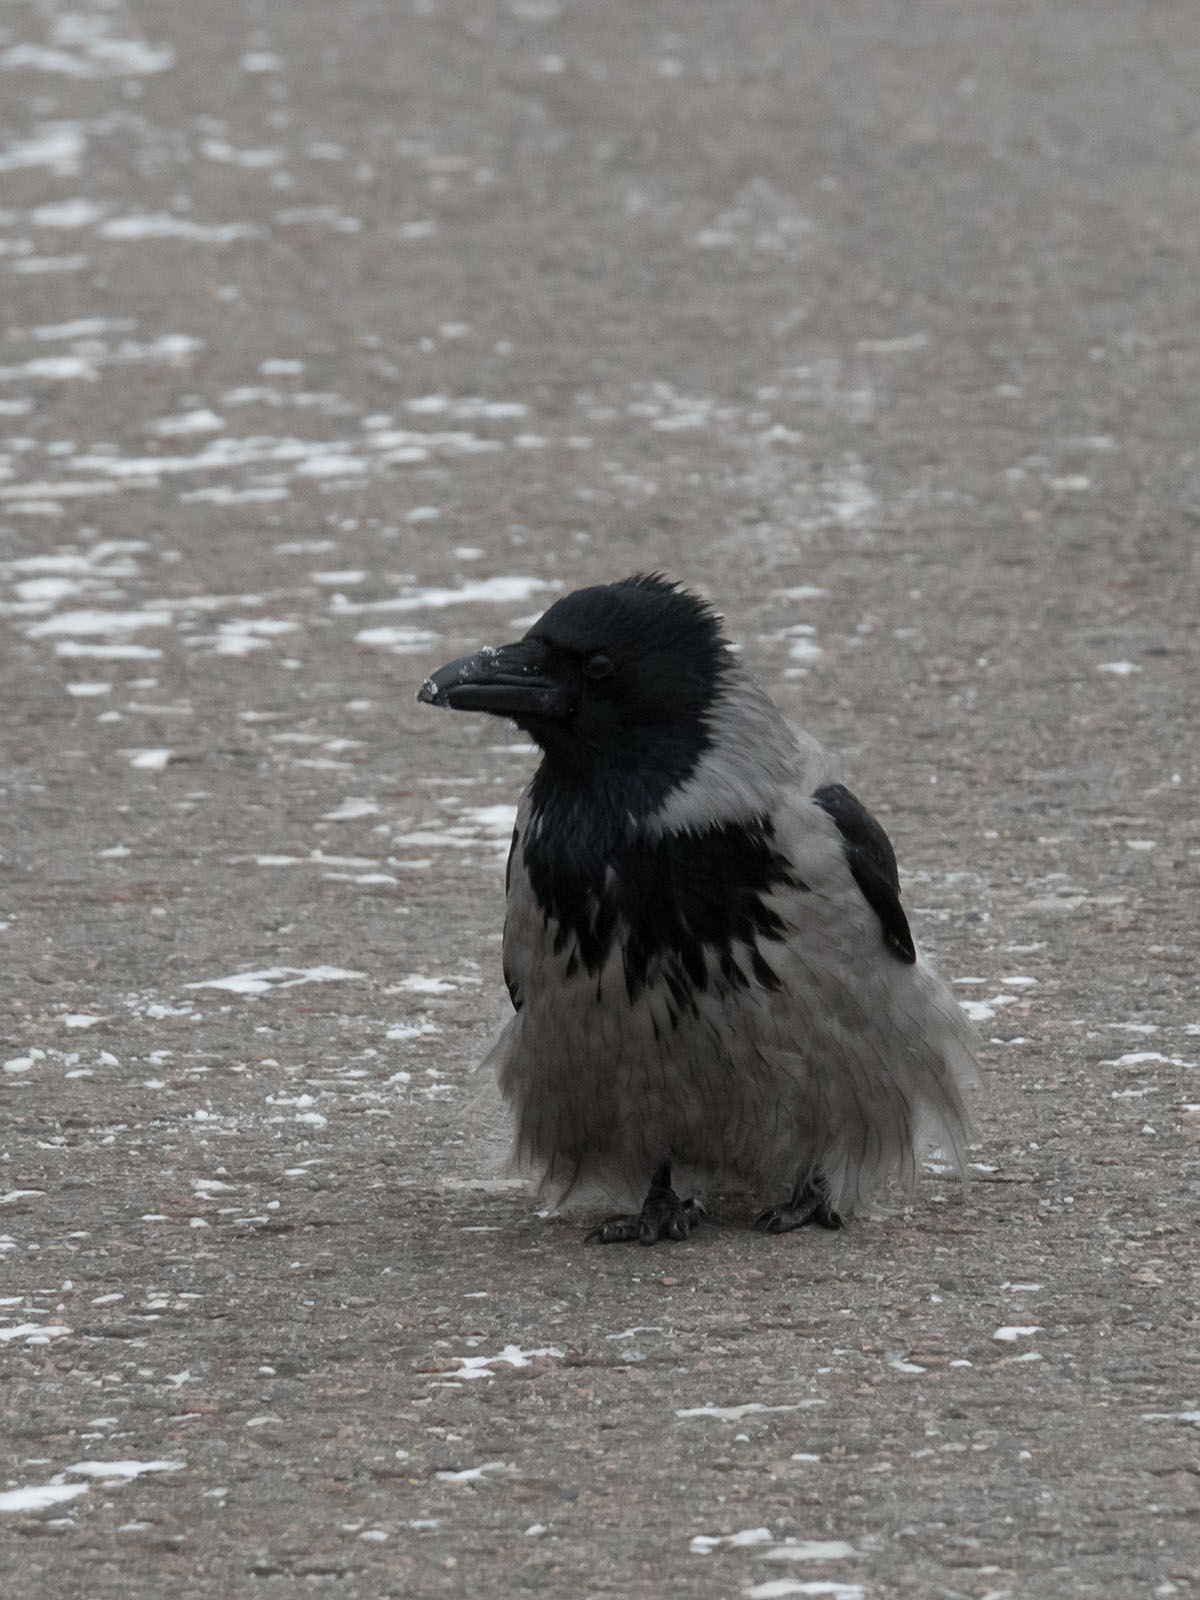 Серая ворона (Corvus cornix) в Парке Горького, Москва. Январь 2018 года. Автор фото: Сутормина Марина